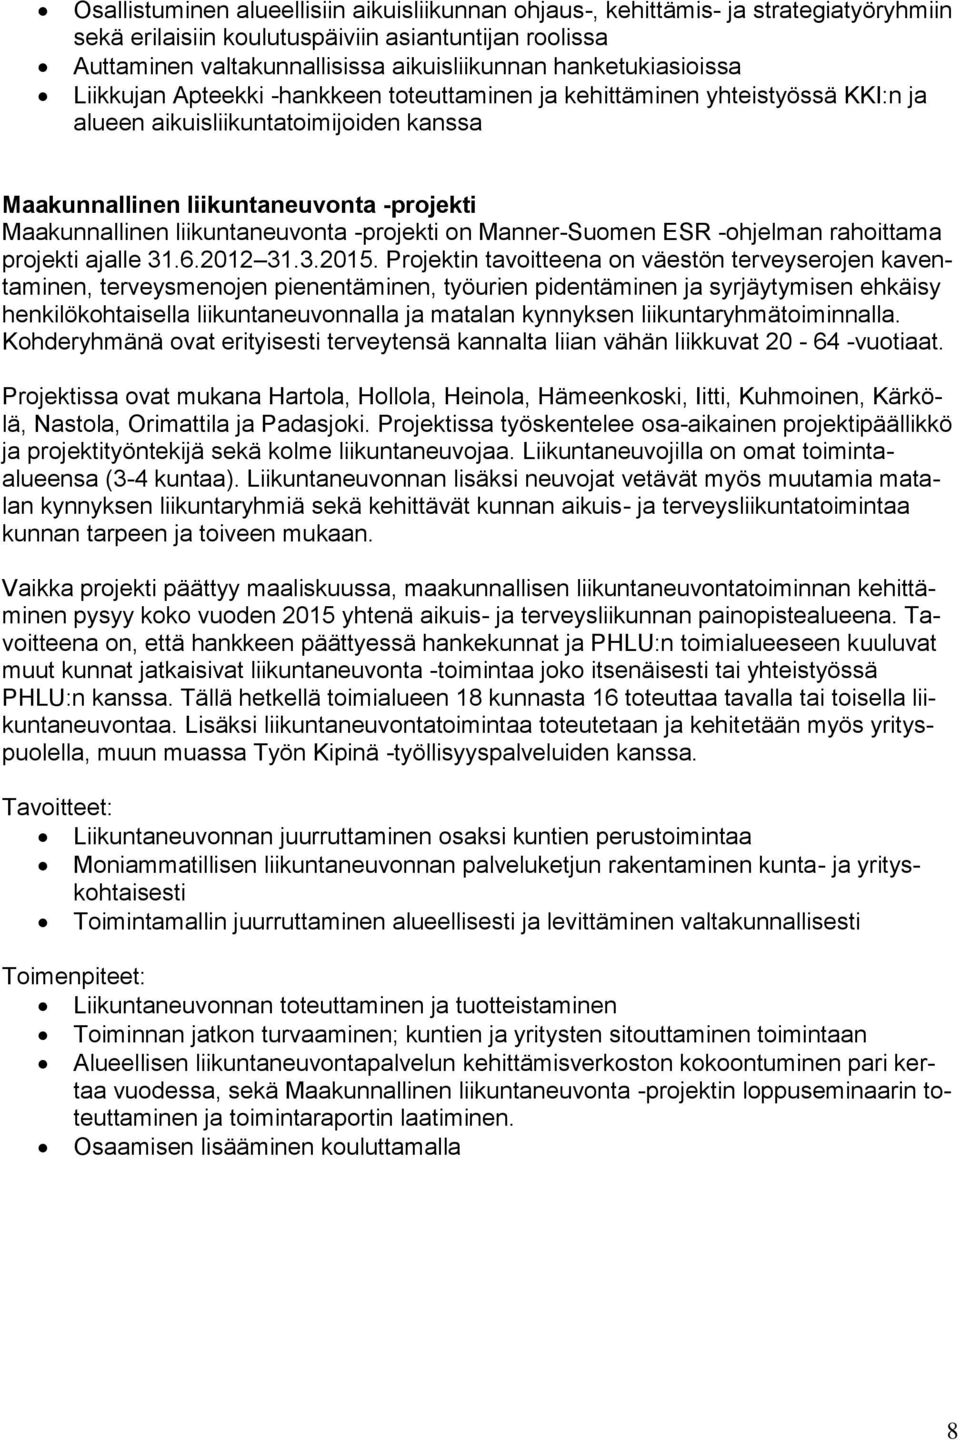 liikuntaneuvonta -projekti on Manner-Suomen ESR -ohjelman rahoittama projekti ajalle 31.6.2012 31.3.2015.